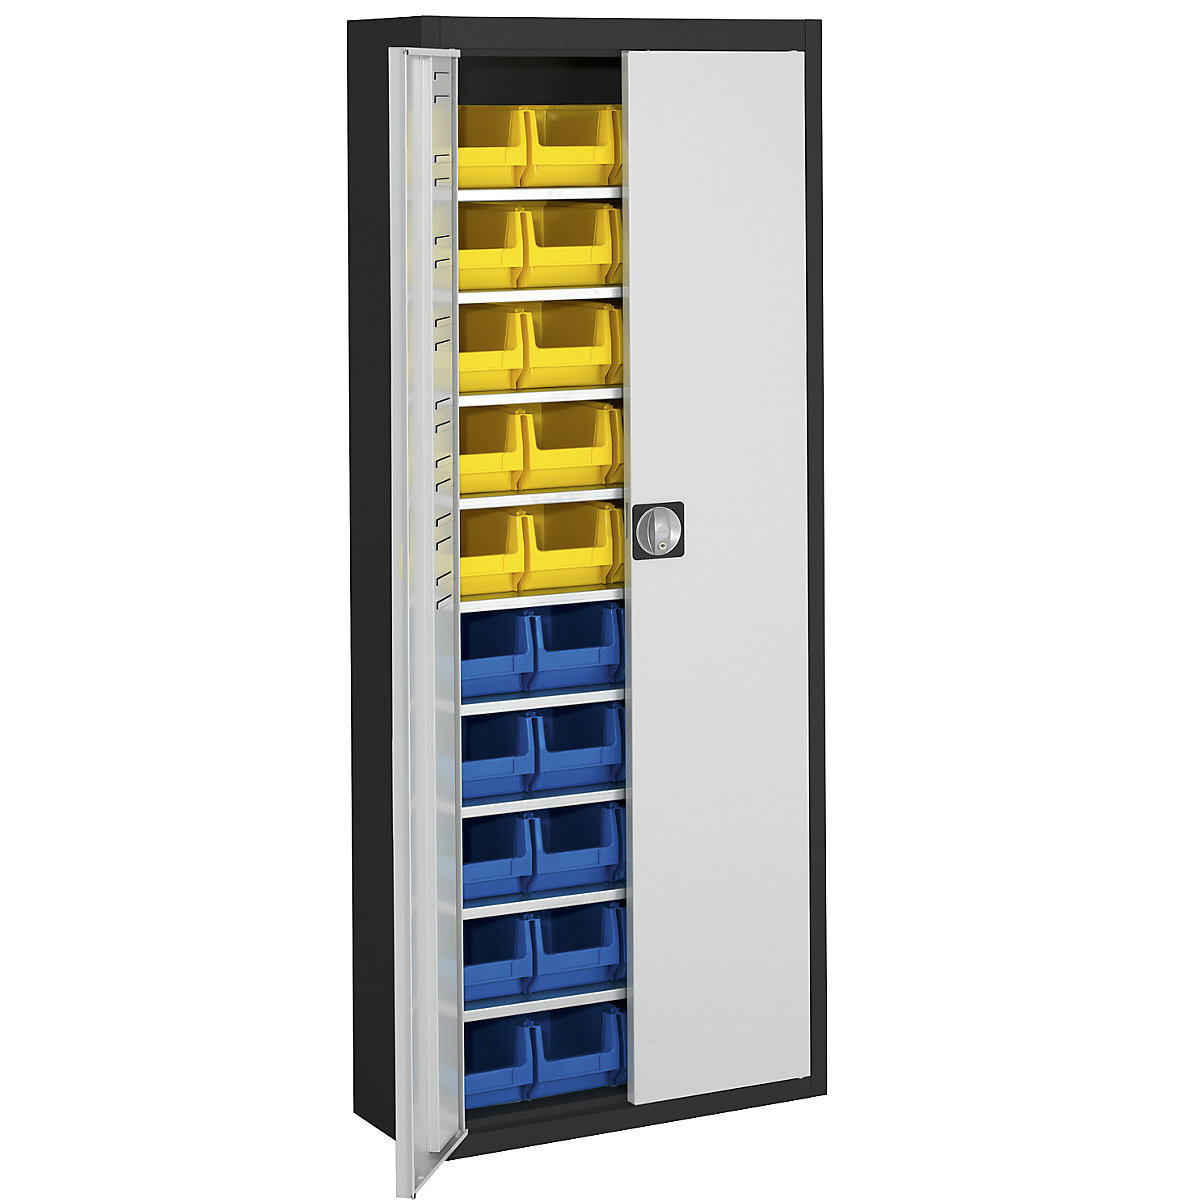 Skladišni ormar s otvorenim skladišnim kutijama – mauser, VxŠxD 1740 x 680 x 280 mm, u dvije boje, korpus u crnoj boji, vrata u sivoj boji, 40 kutija-12